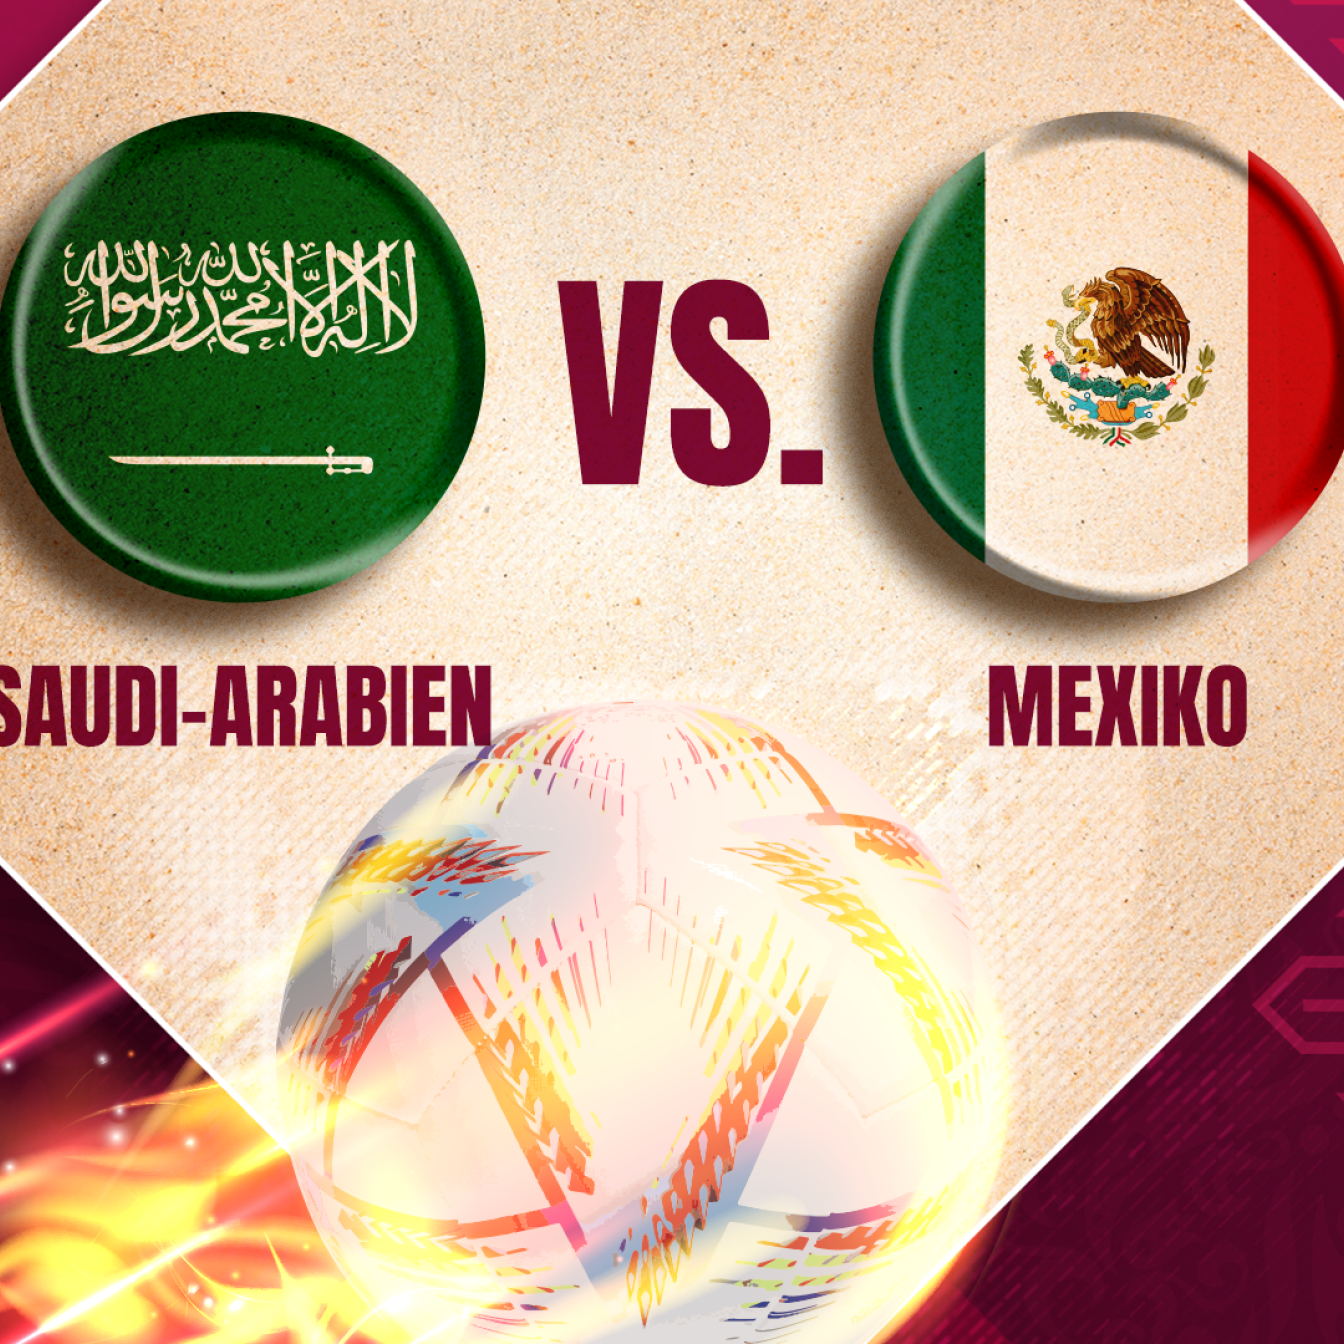 Saudi-Arabien gegen Mexiko